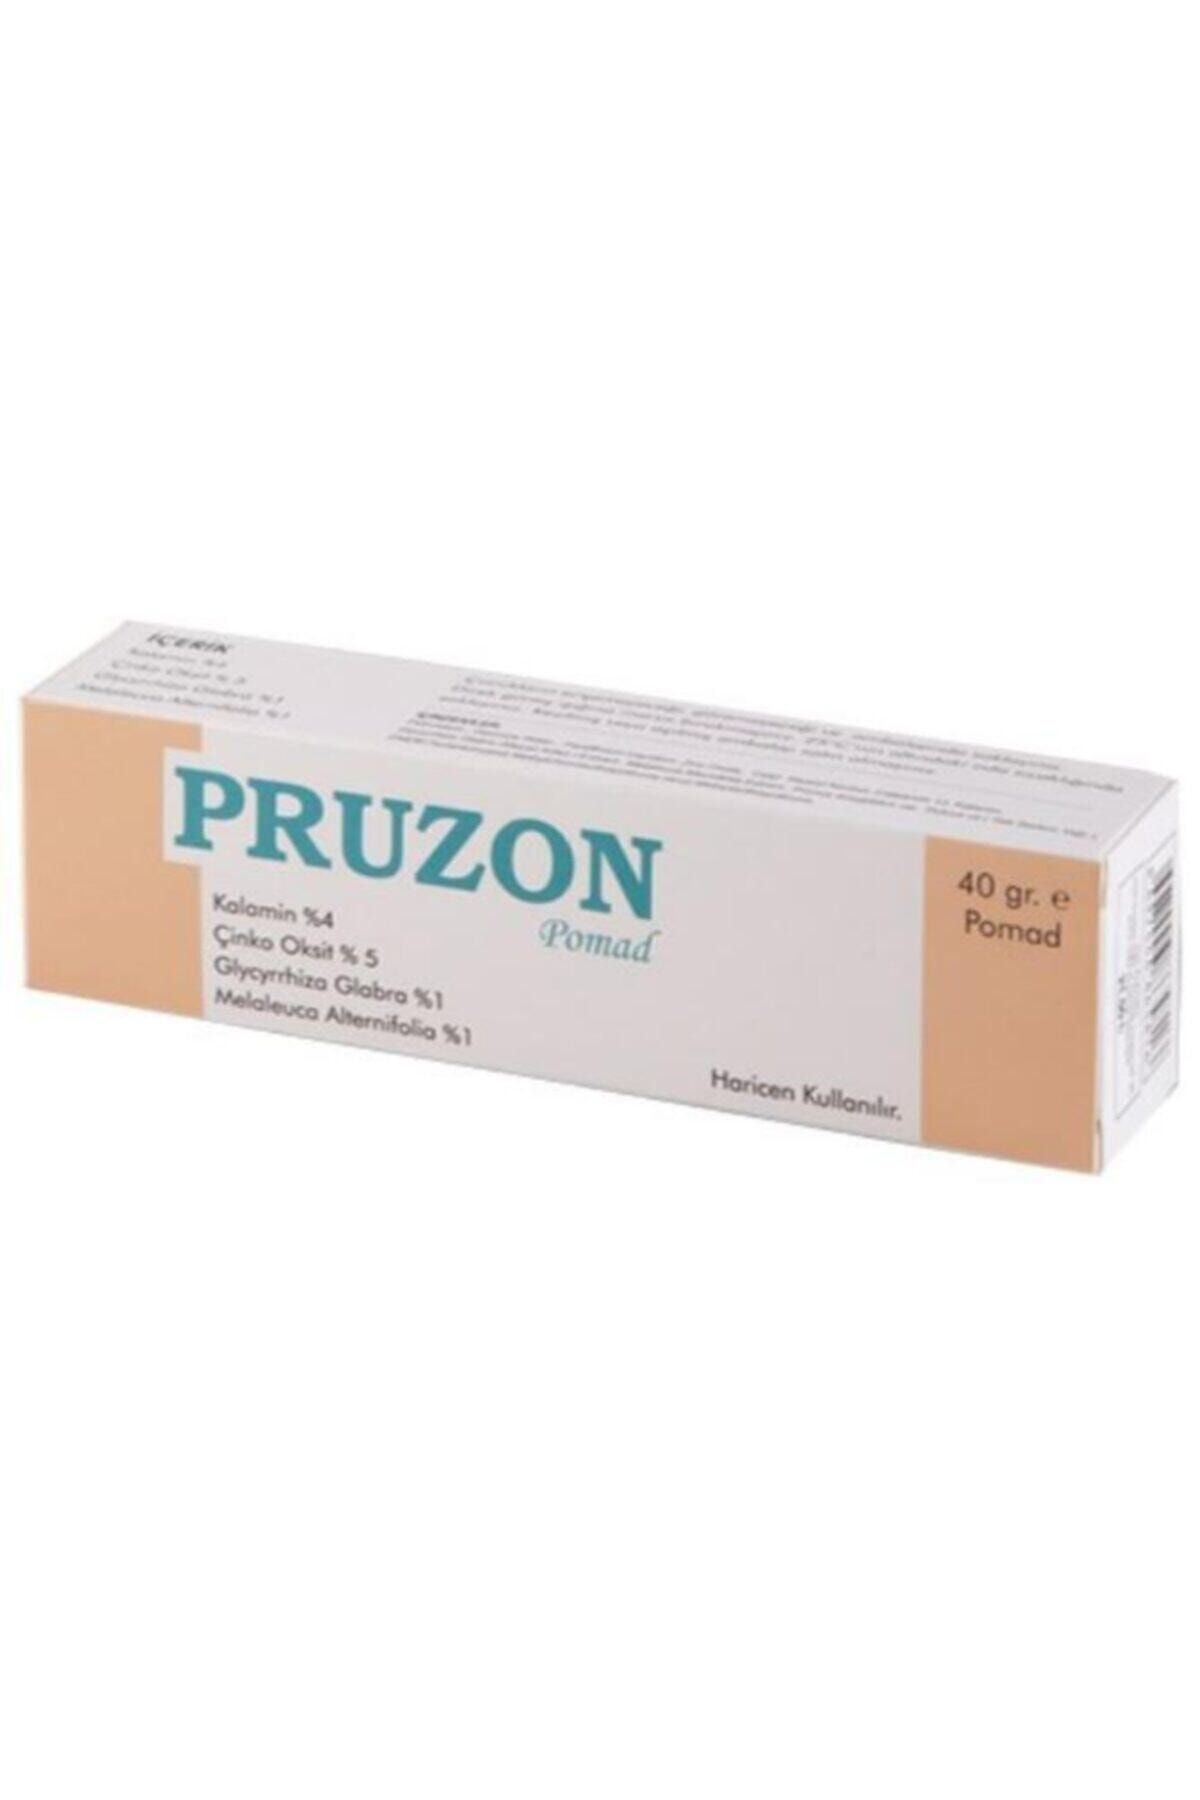 Hair Pharma Hp Pruzon Pomad 40gr